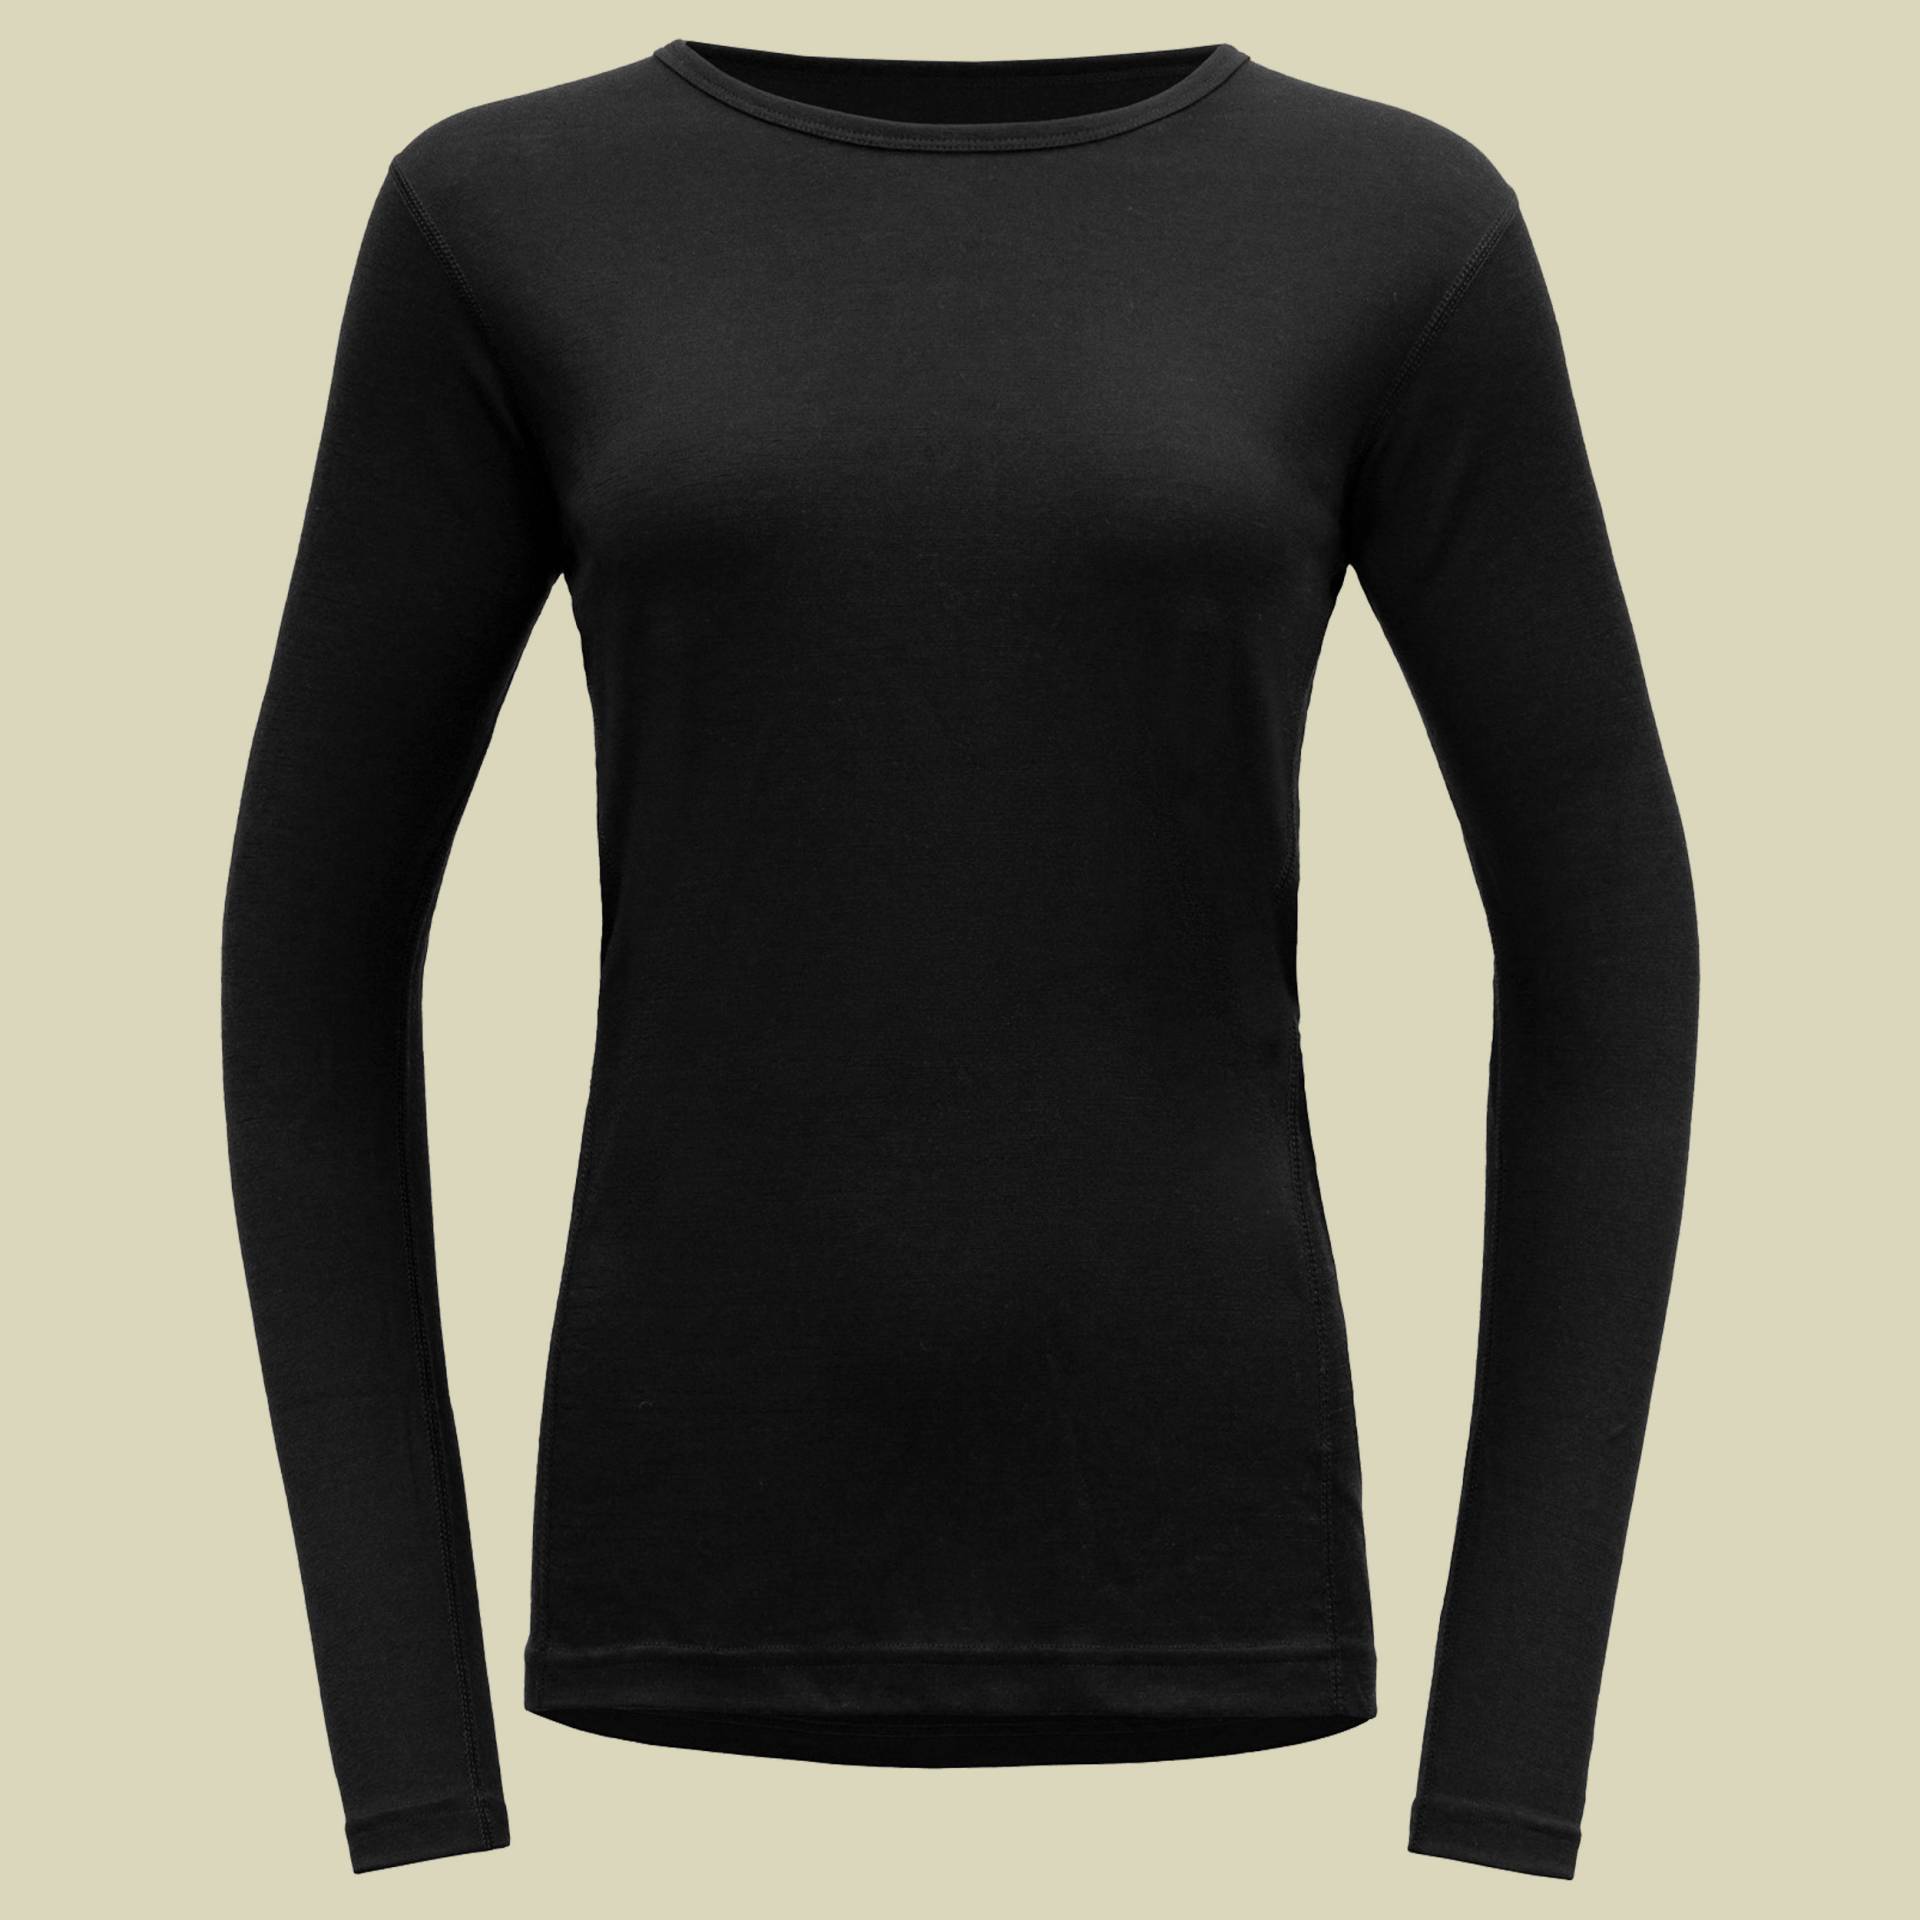 Jakta Merino 200 Shirt Woman Größe XL Farbe black von Devold